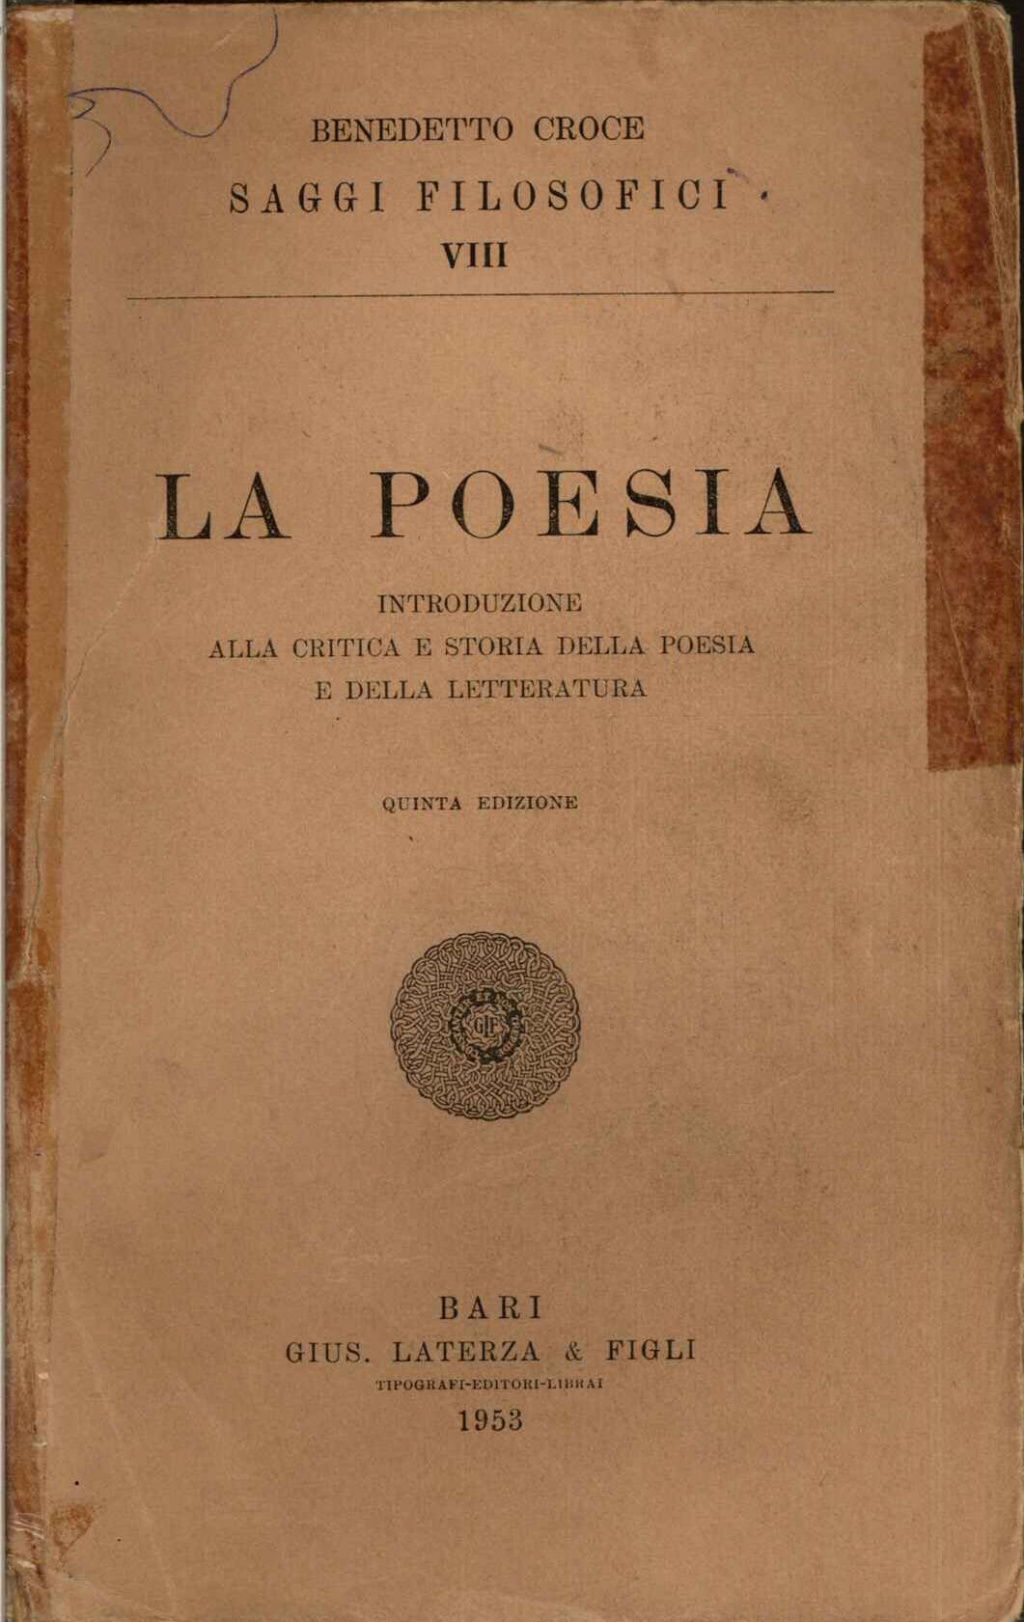 La poesia. Introduzione alla critica e storia della poesia e della letteratura. Quinta edizione